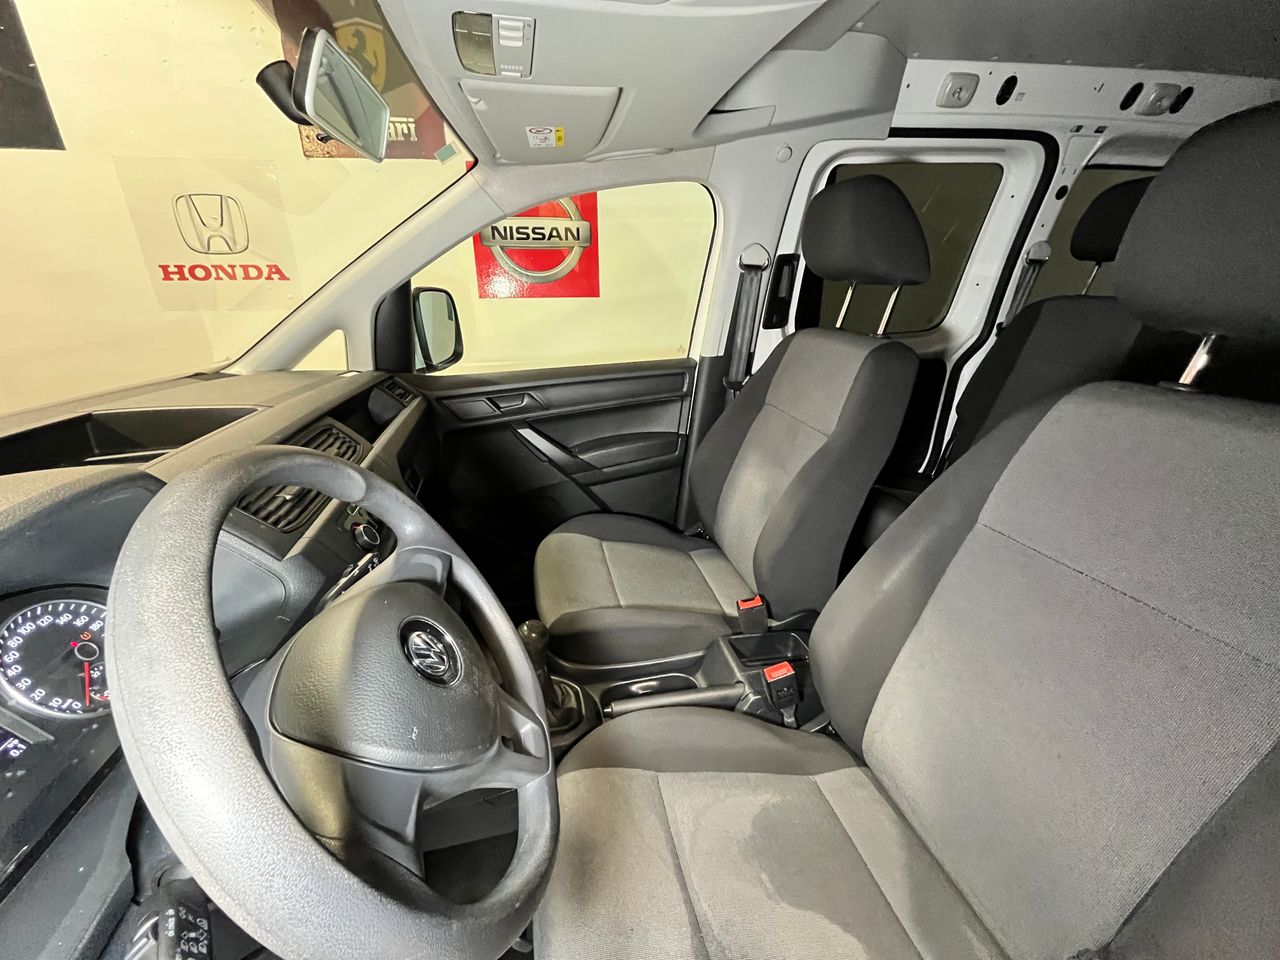 Foto Volkswagen Caddy 15